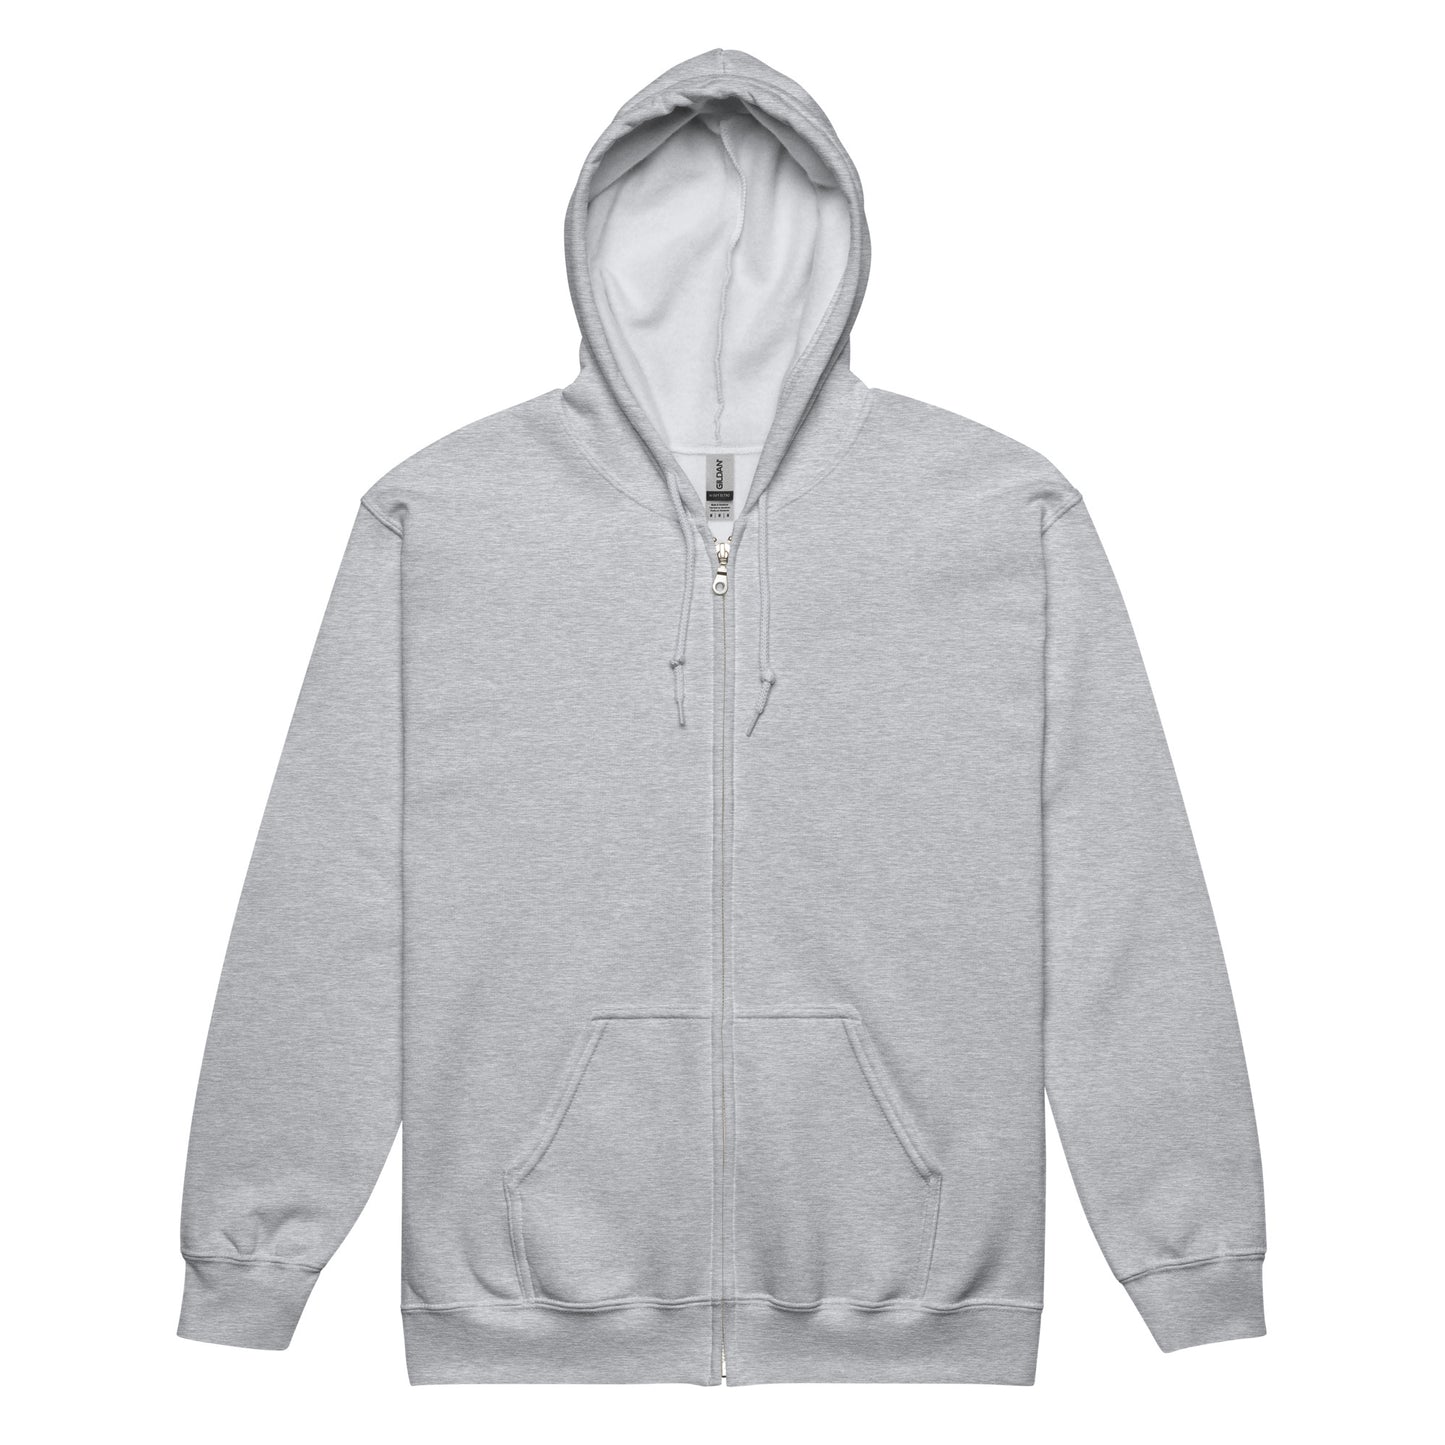 OLG Pray for Us - Unisex heavy blend zip hoodie